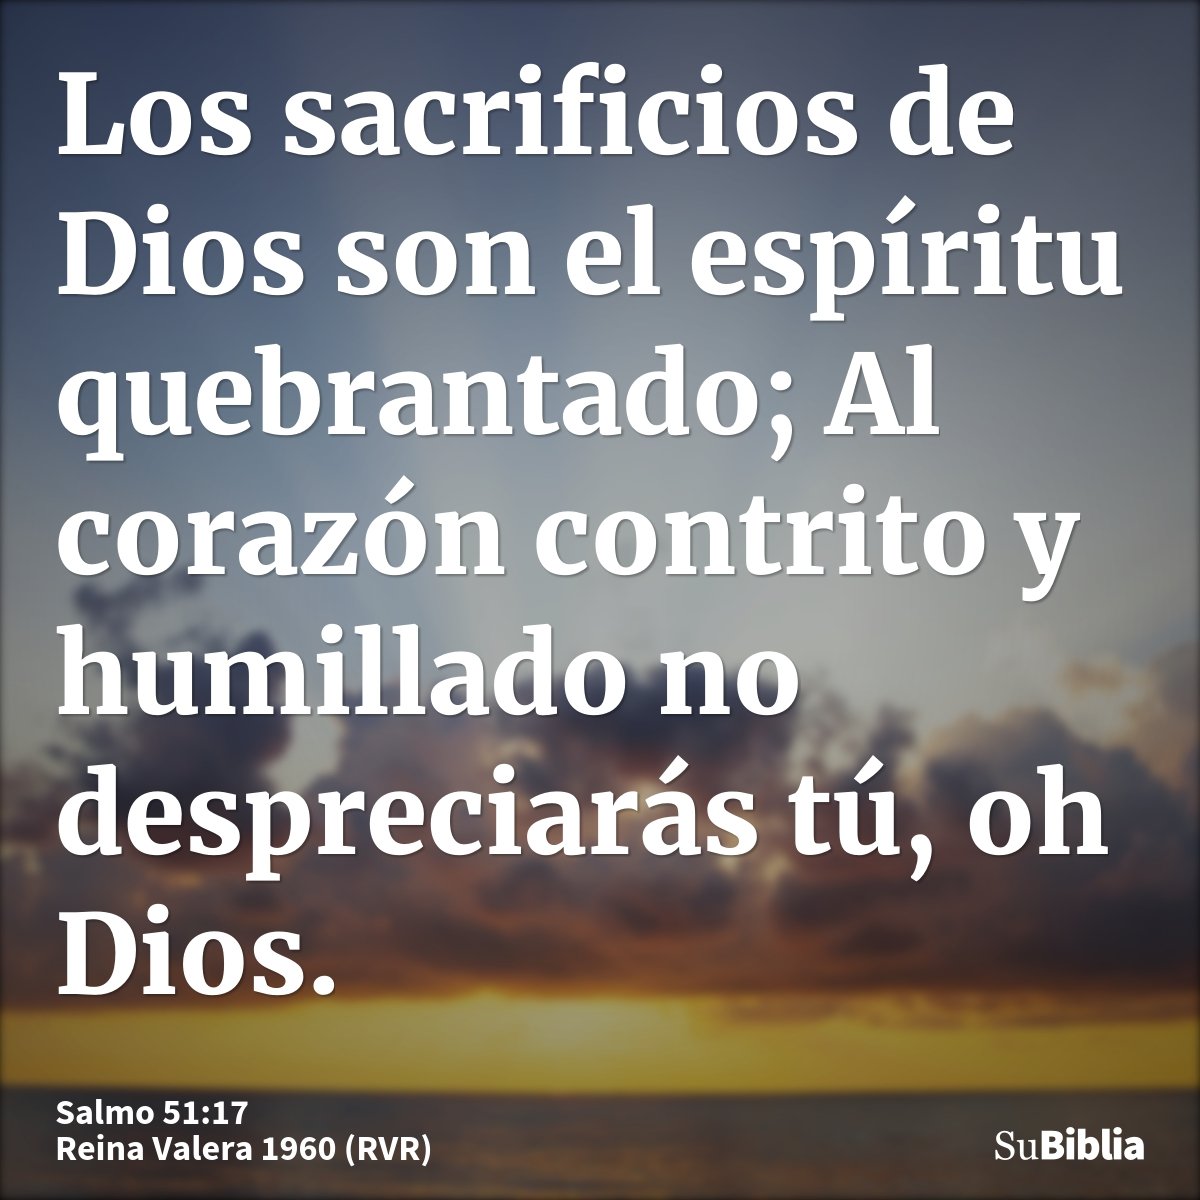 Los sacrificios de Dios son el espíritu quebrantado; Al corazón contrito y humillado no despreciarás tú, oh Dios.